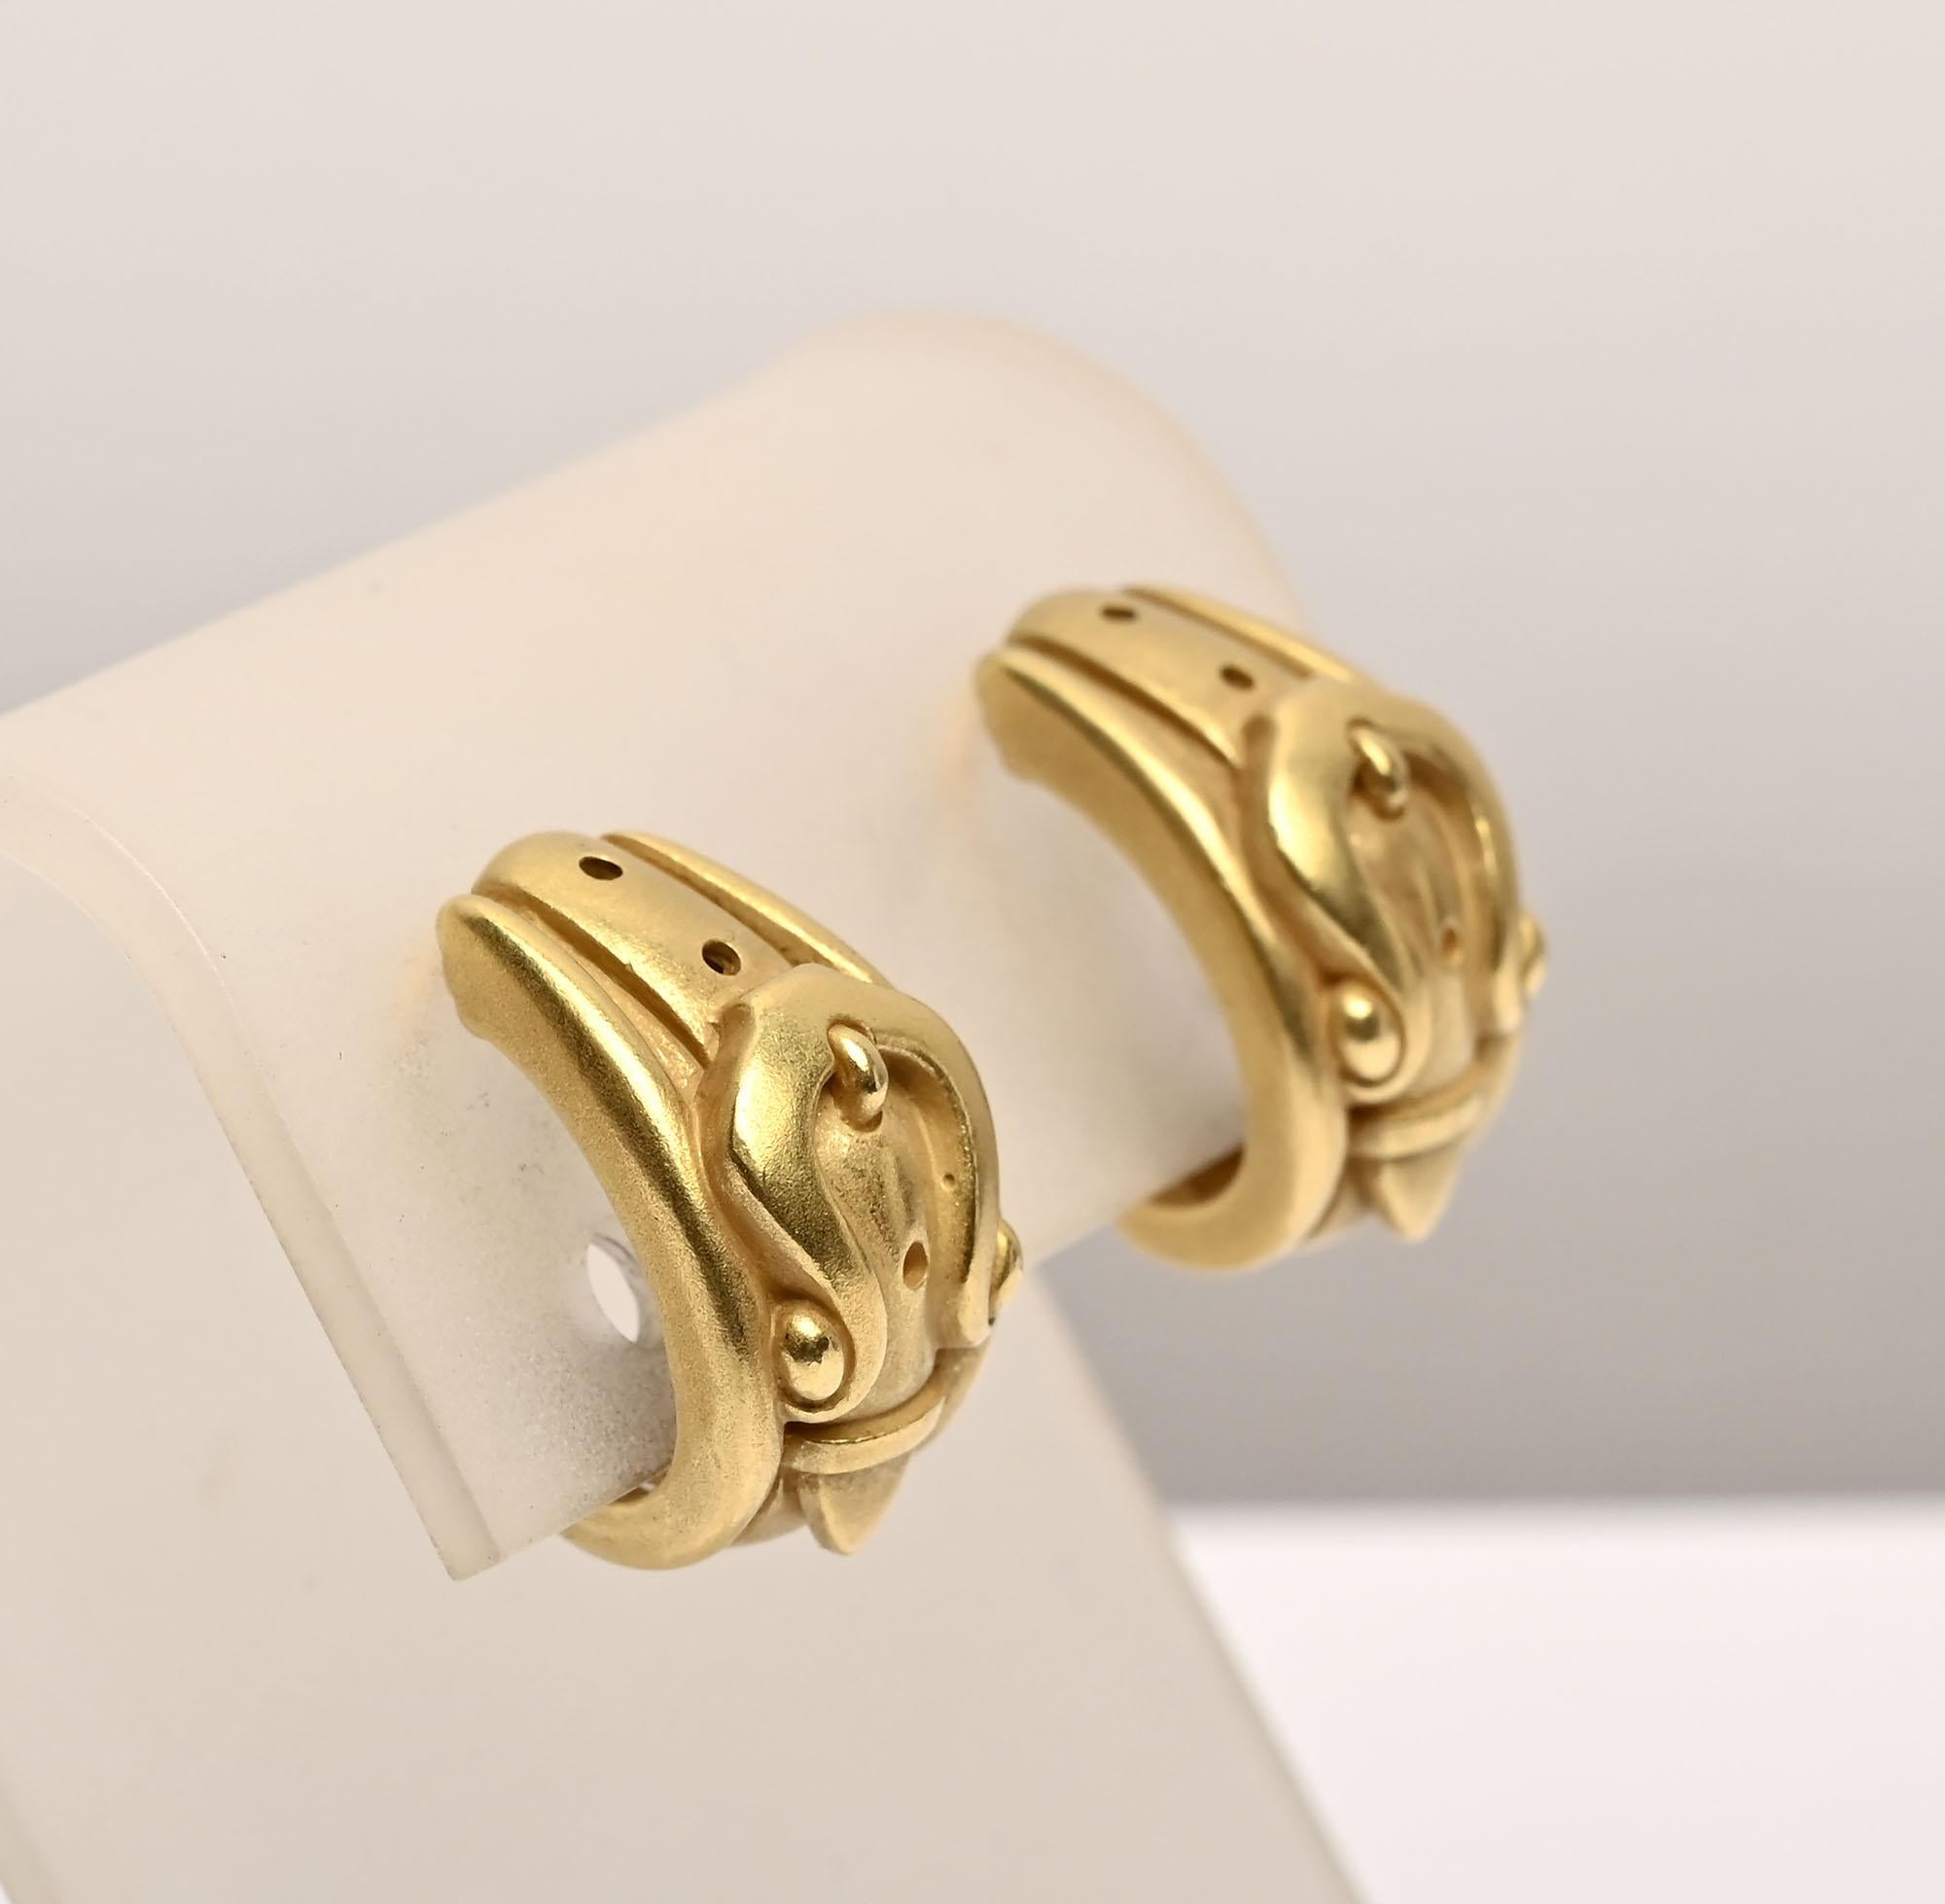 Außergewöhnliche goldene Ohrringe von Barry Kieselstein Cord. Sie  haben die Form einer Schnalle und sind aus dem grünlichen 18-karätigen Gold gefertigt, für das er bekannt ist. Die Details der Ohrringe haben eine schöne skulpturale Wirkung. Sie